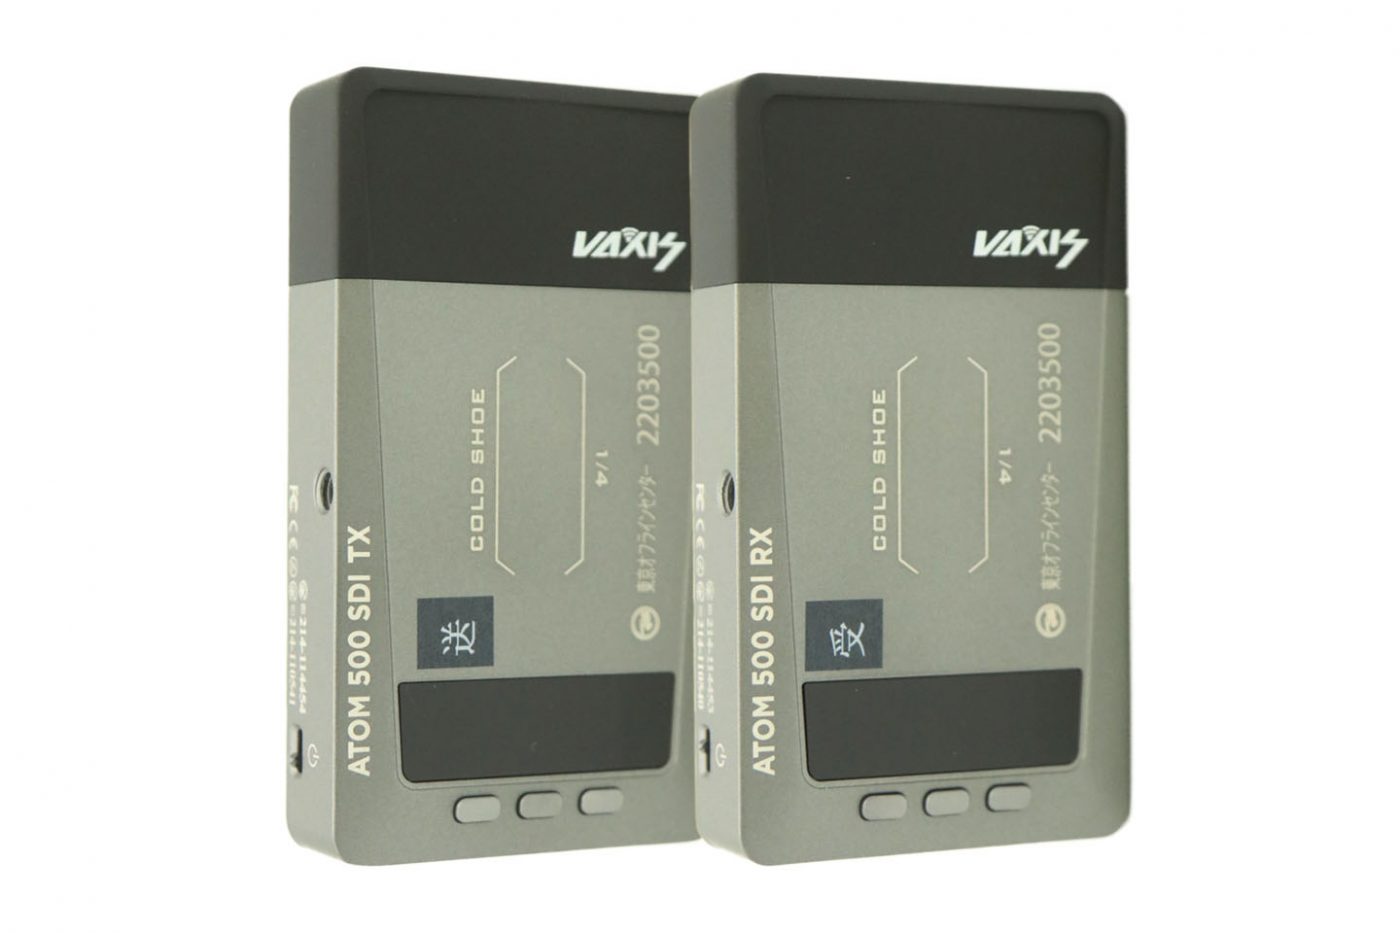 ワイヤレスビデオ伝送システム(VAXIS ATOM 500 SDI)